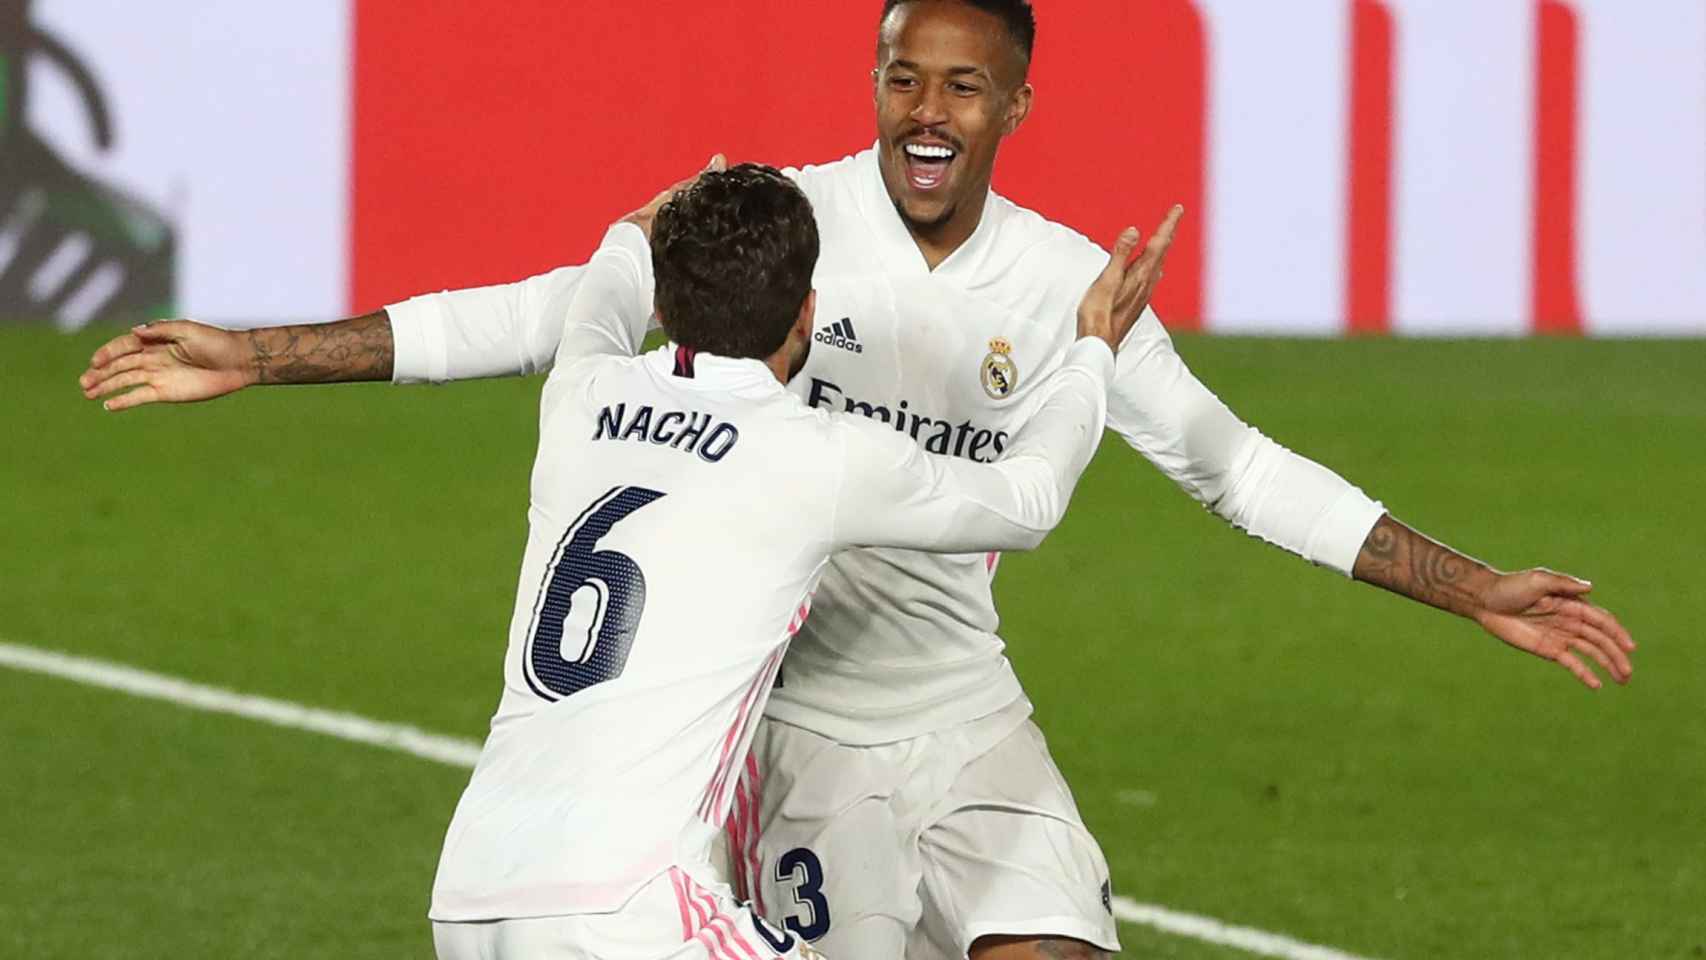 Nacho felicita a Militao por su gol a Osasuna